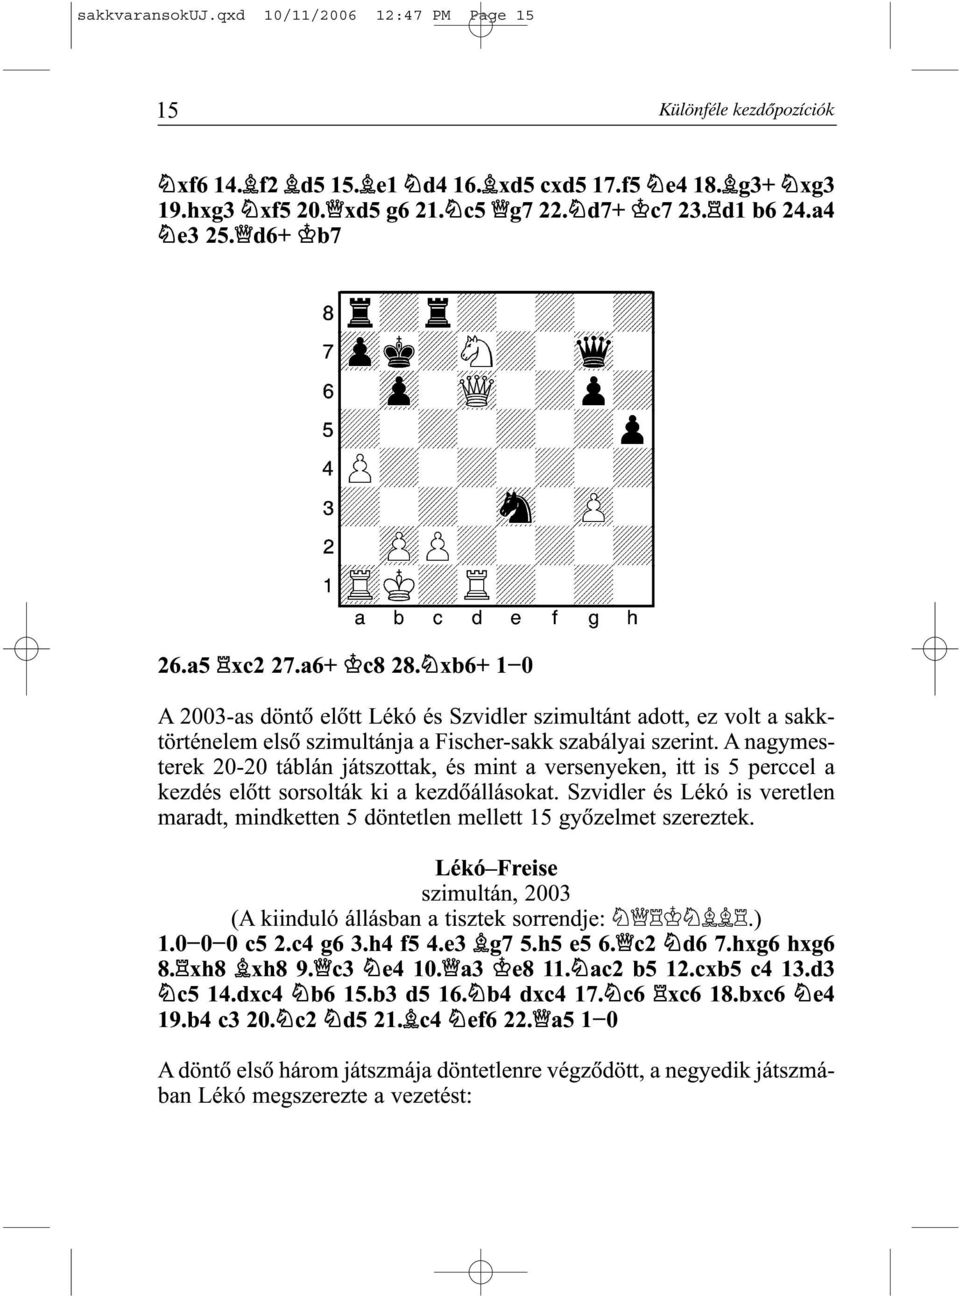 xb6+ 1-0 A 2003-as döntõ elõtt Lékó és Szvidler szimultánt adott, ez volt a sakktörténelem elsõ szimultánja a Fischer-sakk szabályai szerint.